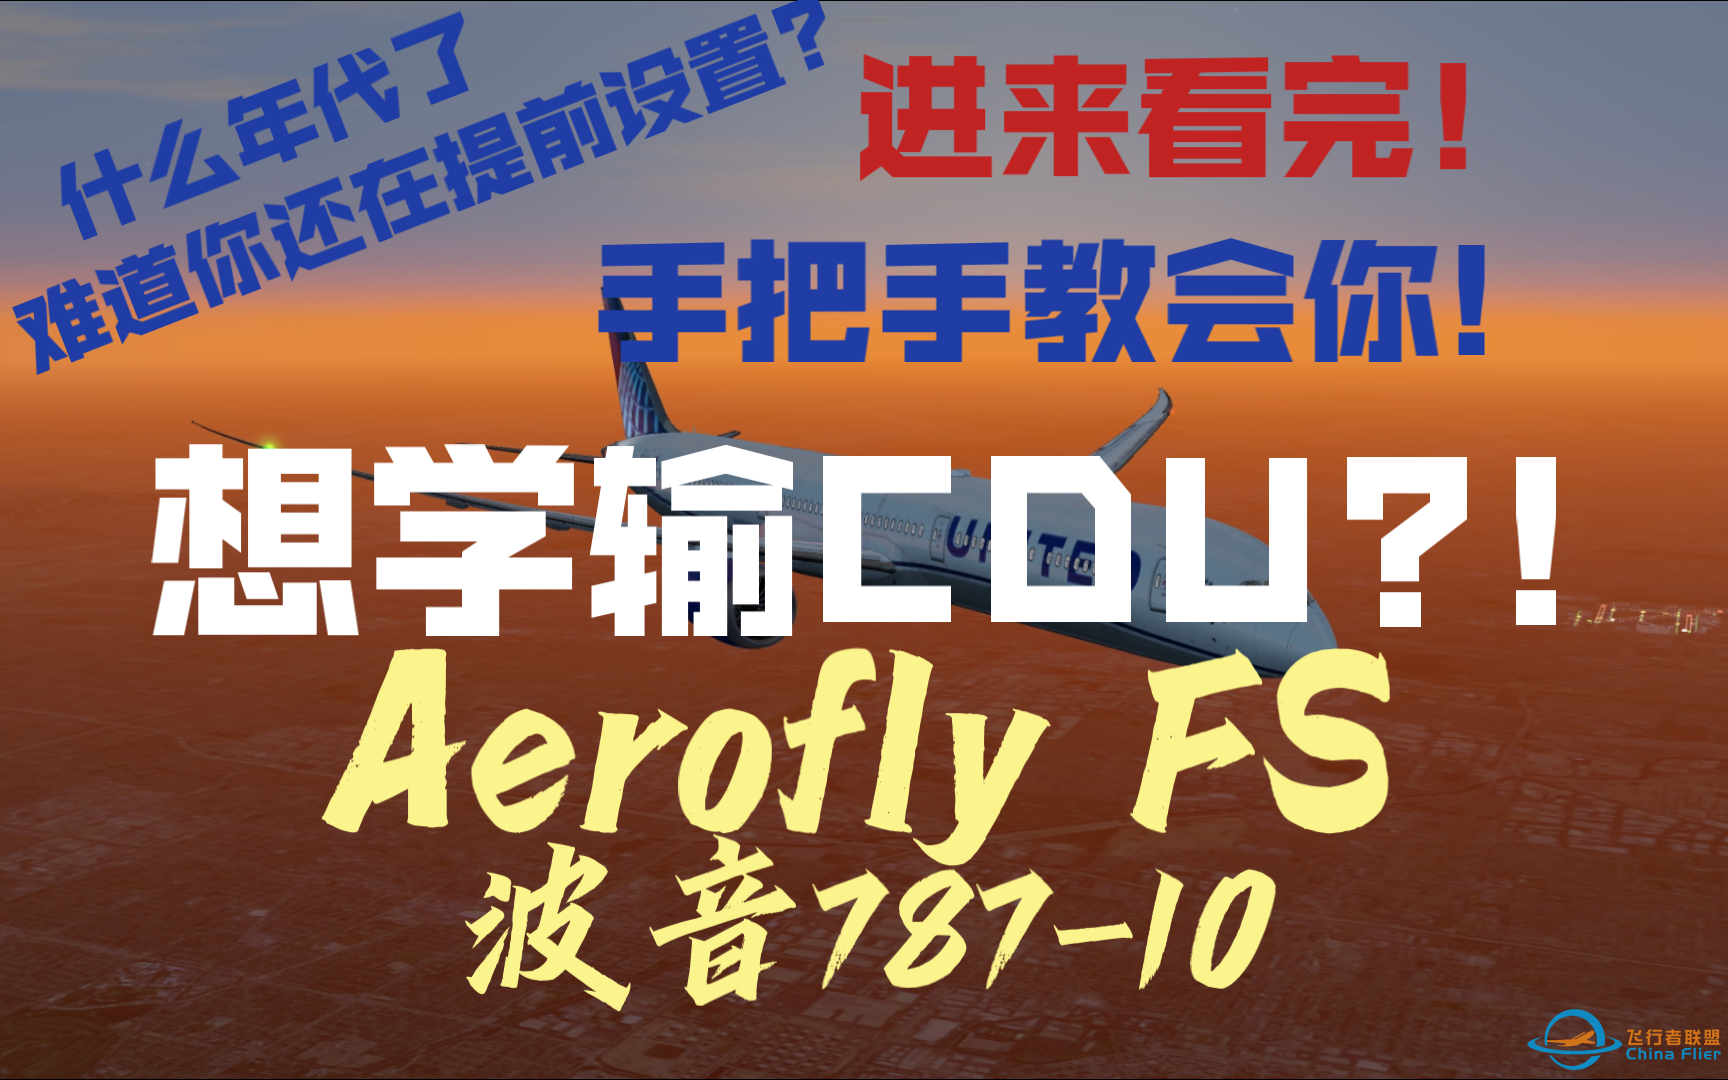 [Aerofly FS]这可能是目前B站上最标准最详细的B787-10CDU教程(没有提前设置任何东西)-7029 